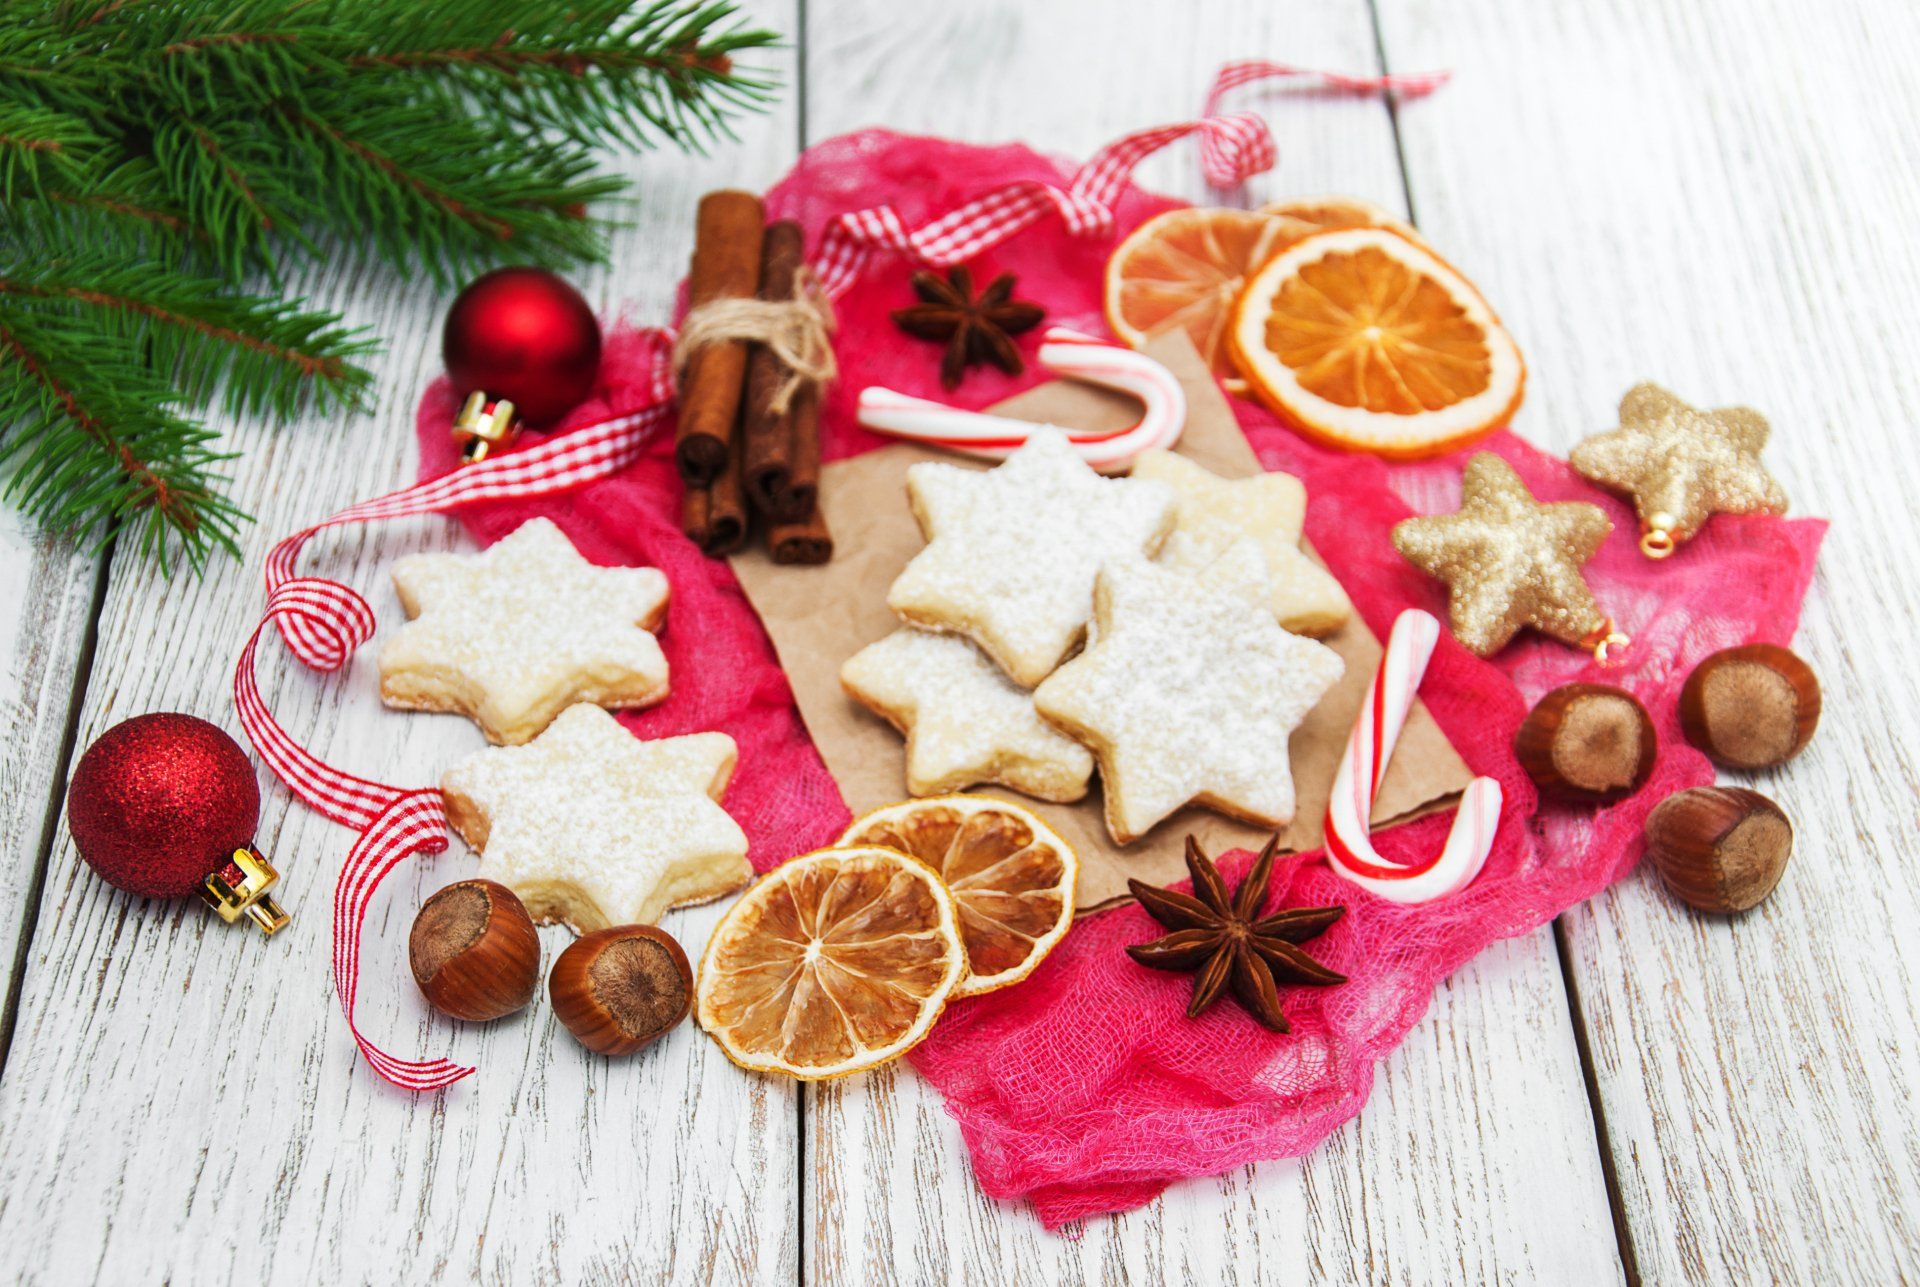 Christmas baked goods, holiday drinks, holiday season